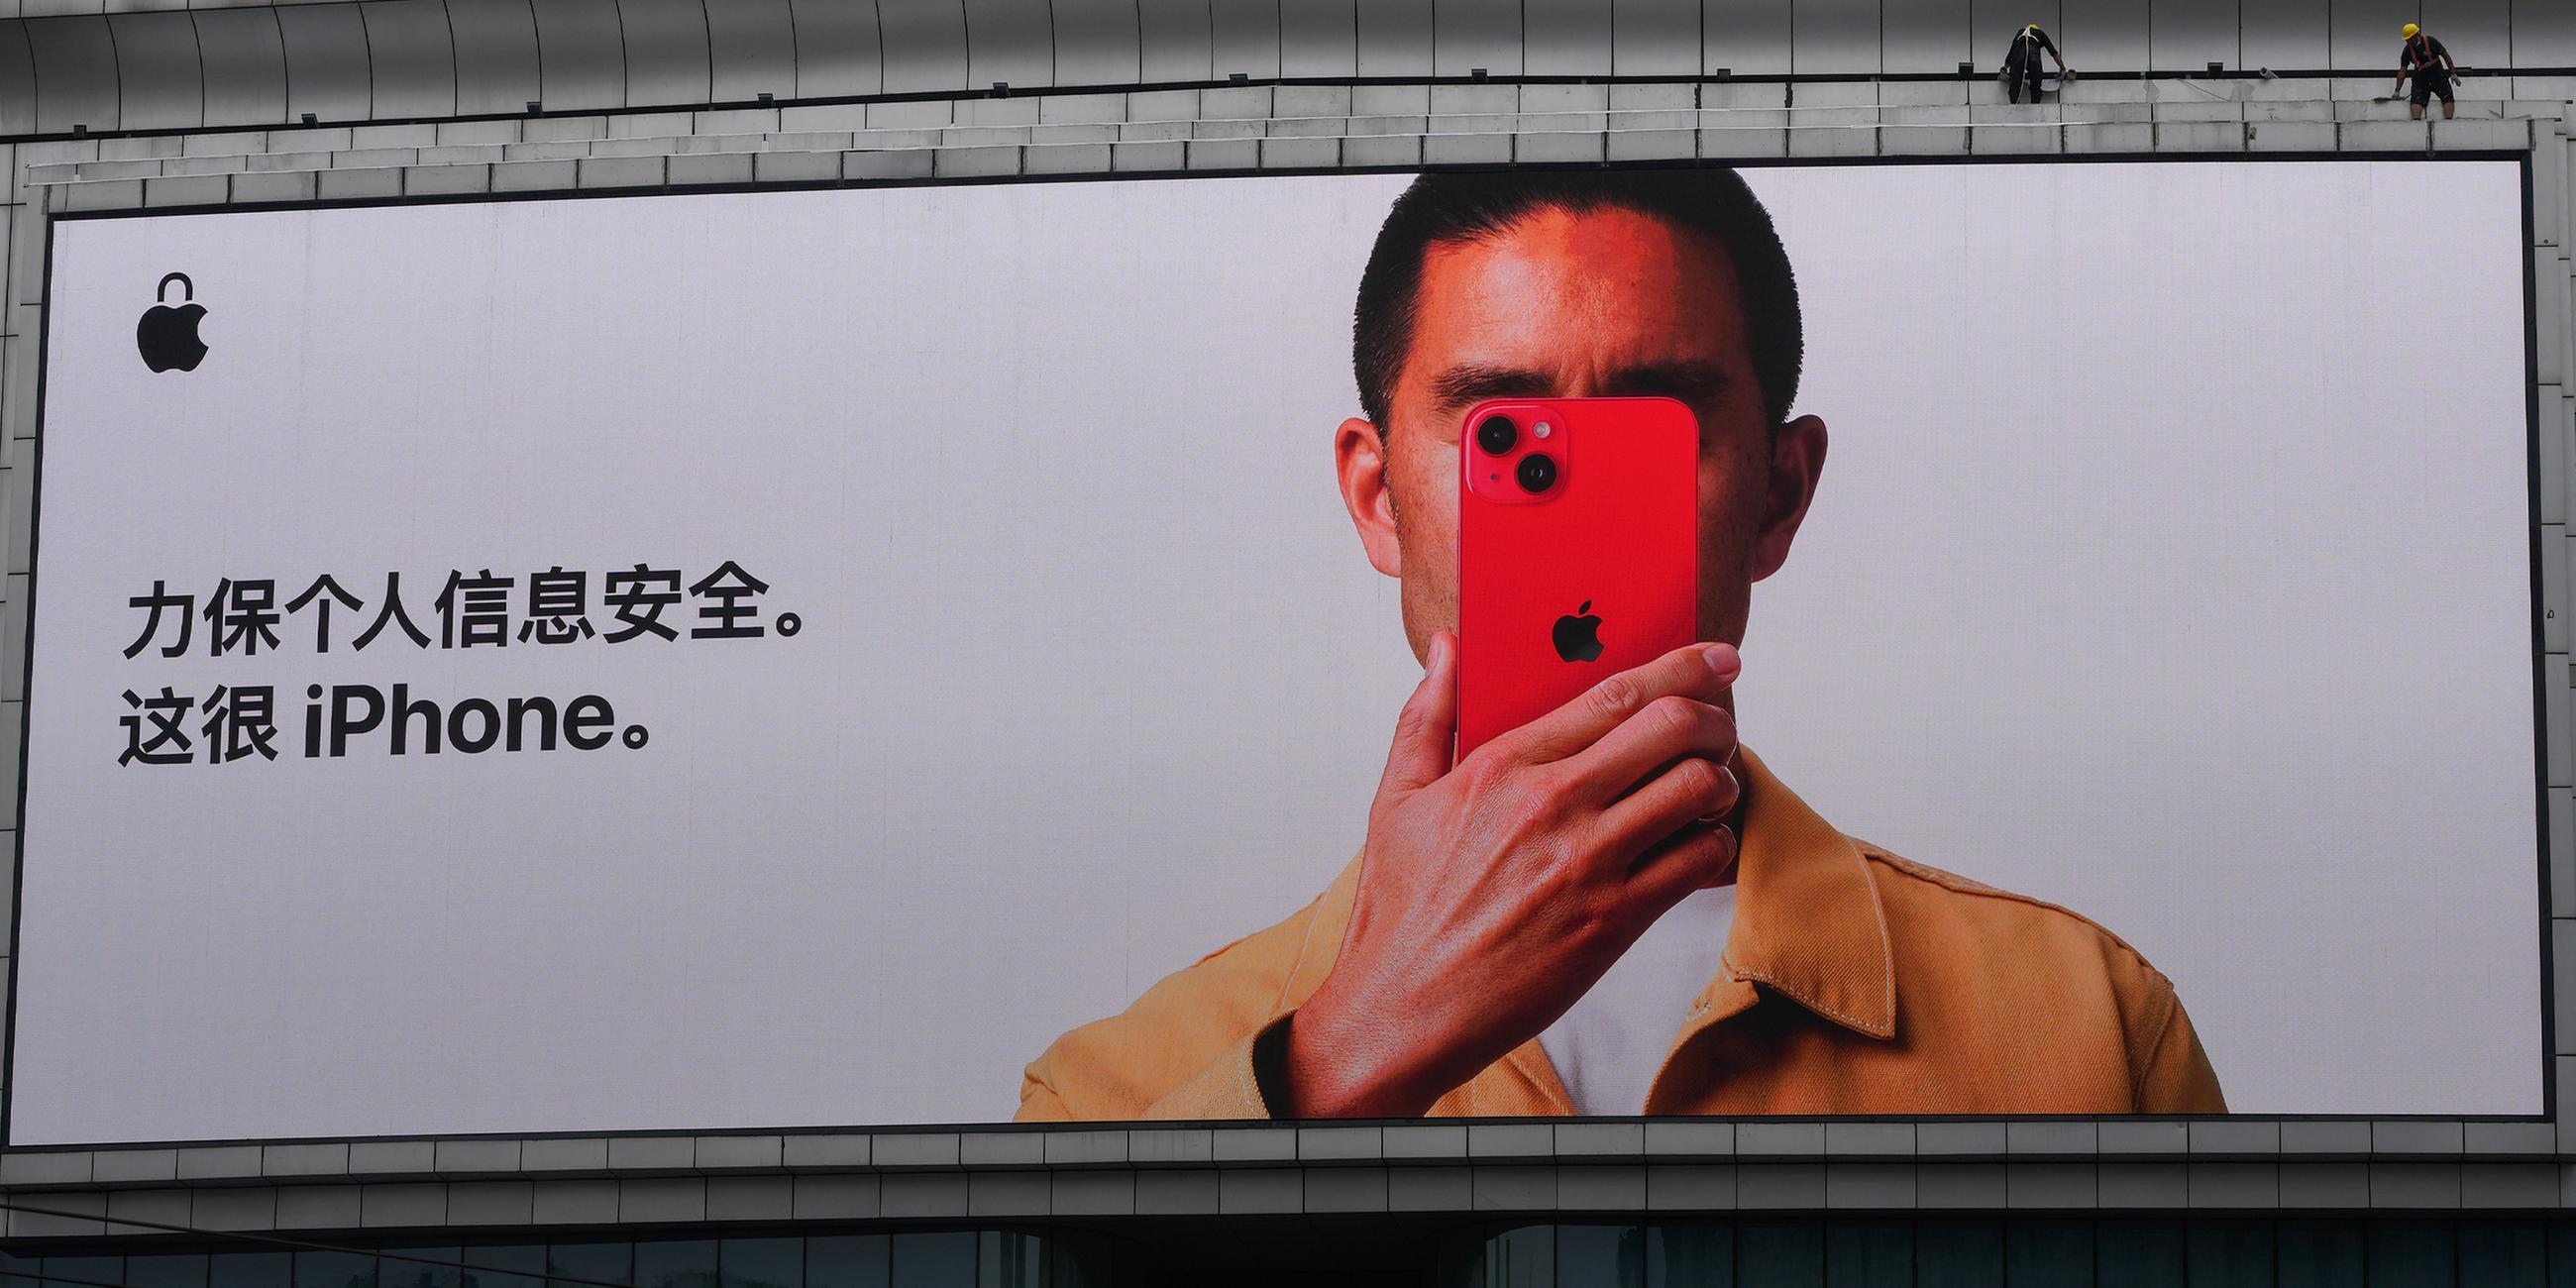 Archiv: Apple iPhone-Werbung auf einem Bildschirm mit der Aufschrift „Bewahren Sie Ihre persönlichen Daten sicher. Das ist sehr iPhone“ in Peking.